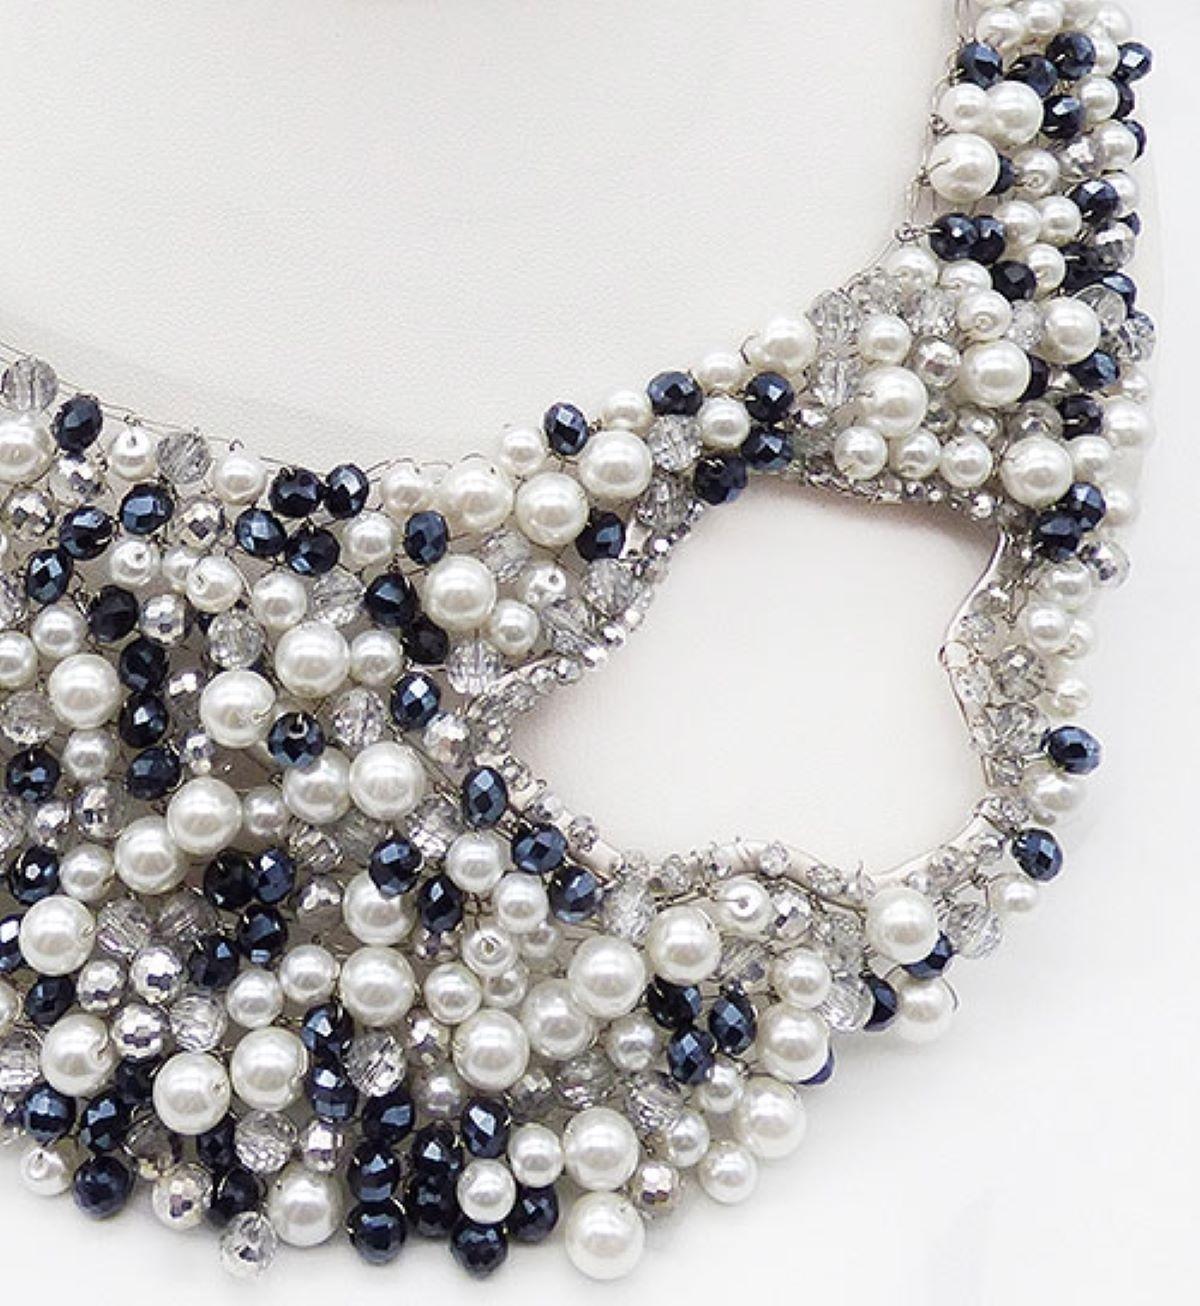 Fabuleux collier plastron en perles tissées à la main, cristal et perles à facettes du designer Joe Vilaiwan. Un design étonnant de petites et grandes perles blanches, de perles en cristal clair à facettes avec revêtement argenté et de perles en